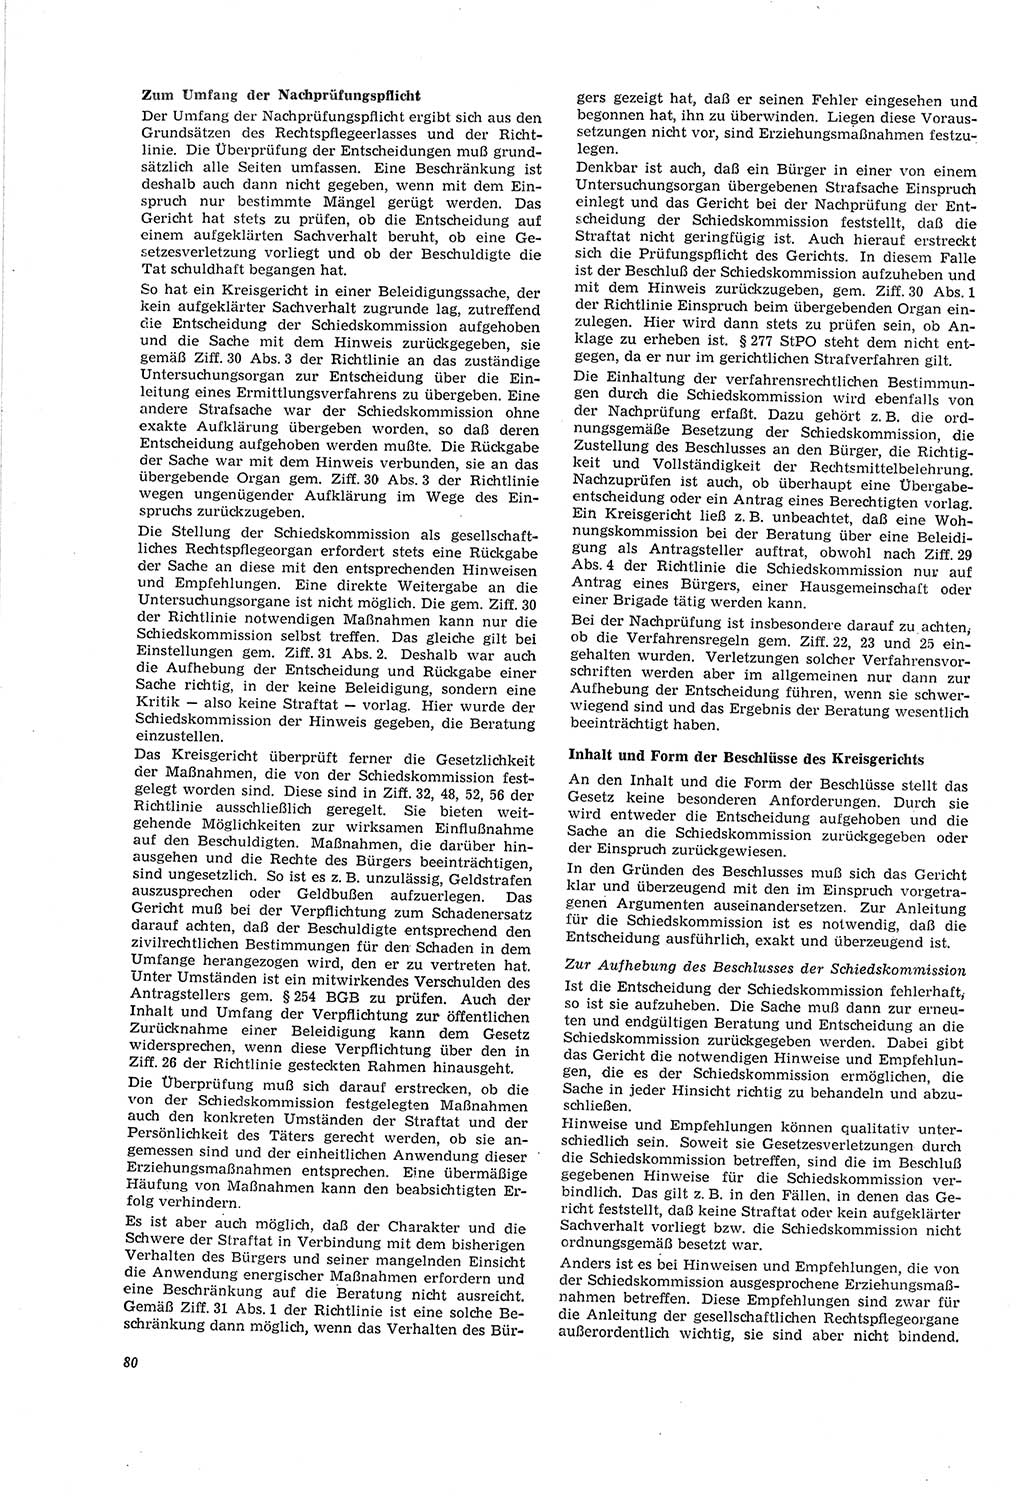 Neue Justiz (NJ), Zeitschrift für Recht und Rechtswissenschaft [Deutsche Demokratische Republik (DDR)], 20. Jahrgang 1966, Seite 80 (NJ DDR 1966, S. 80)